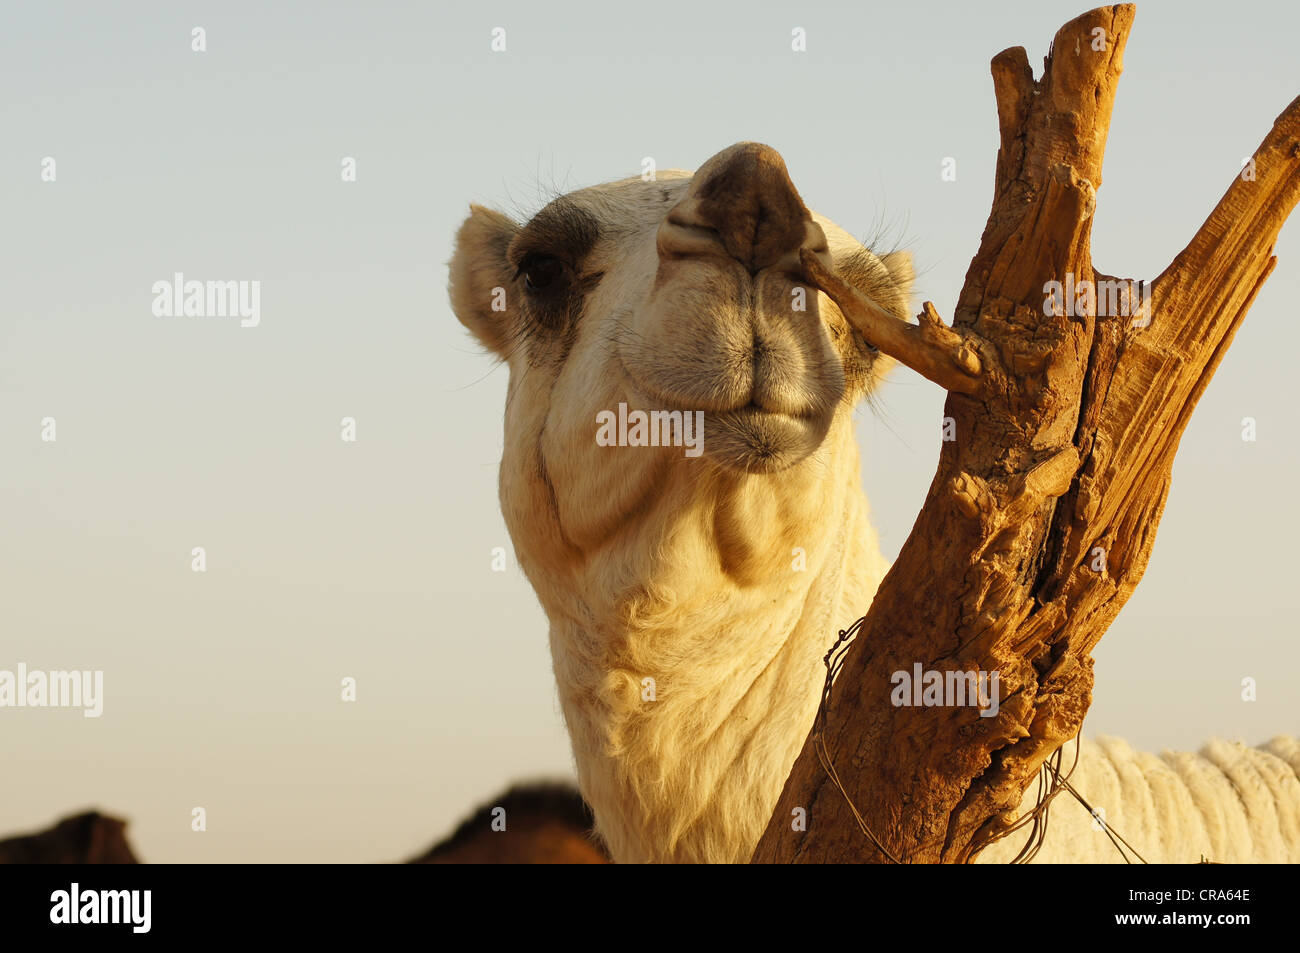 Camel rascarse la nariz en el tocón de un árbol, arenas rojas del desierto, Riad, Reino de Arabia Saudita Foto de stock